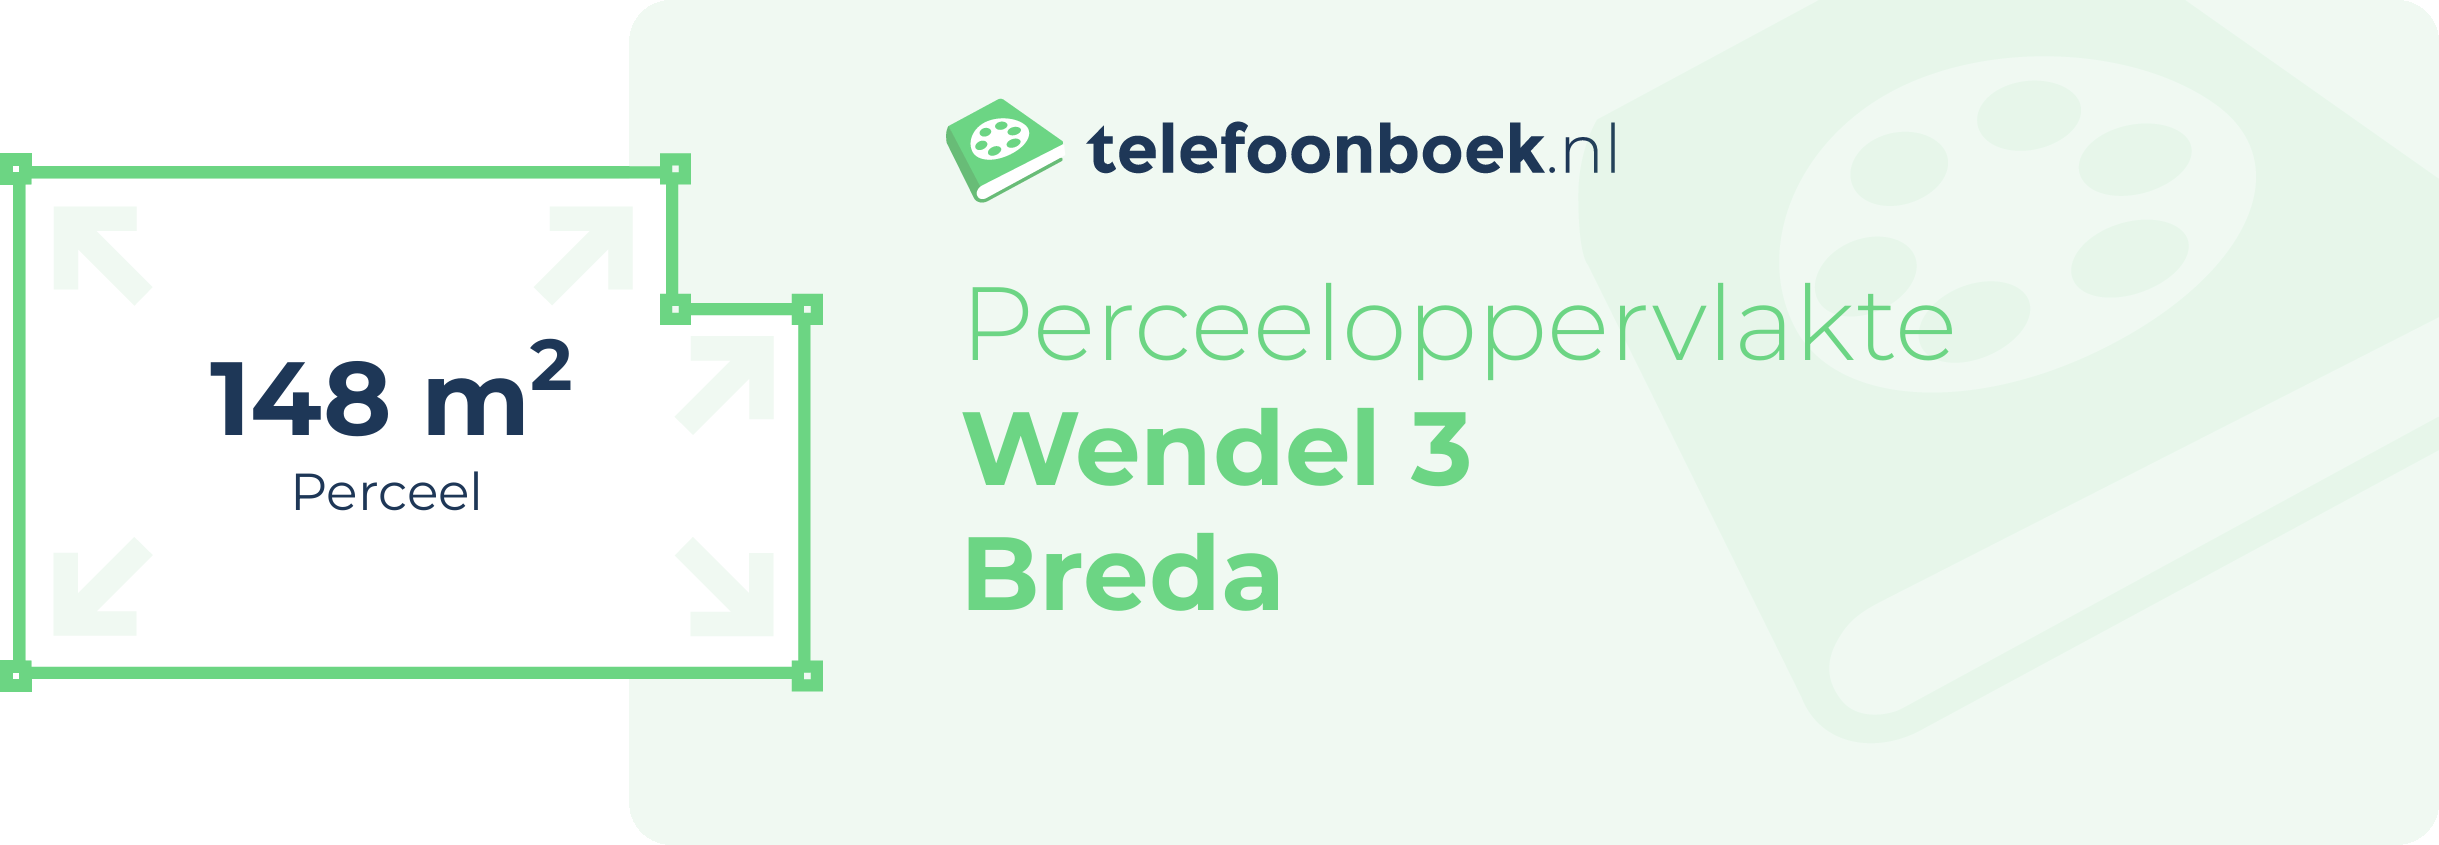 Perceeloppervlakte Wendel 3 Breda